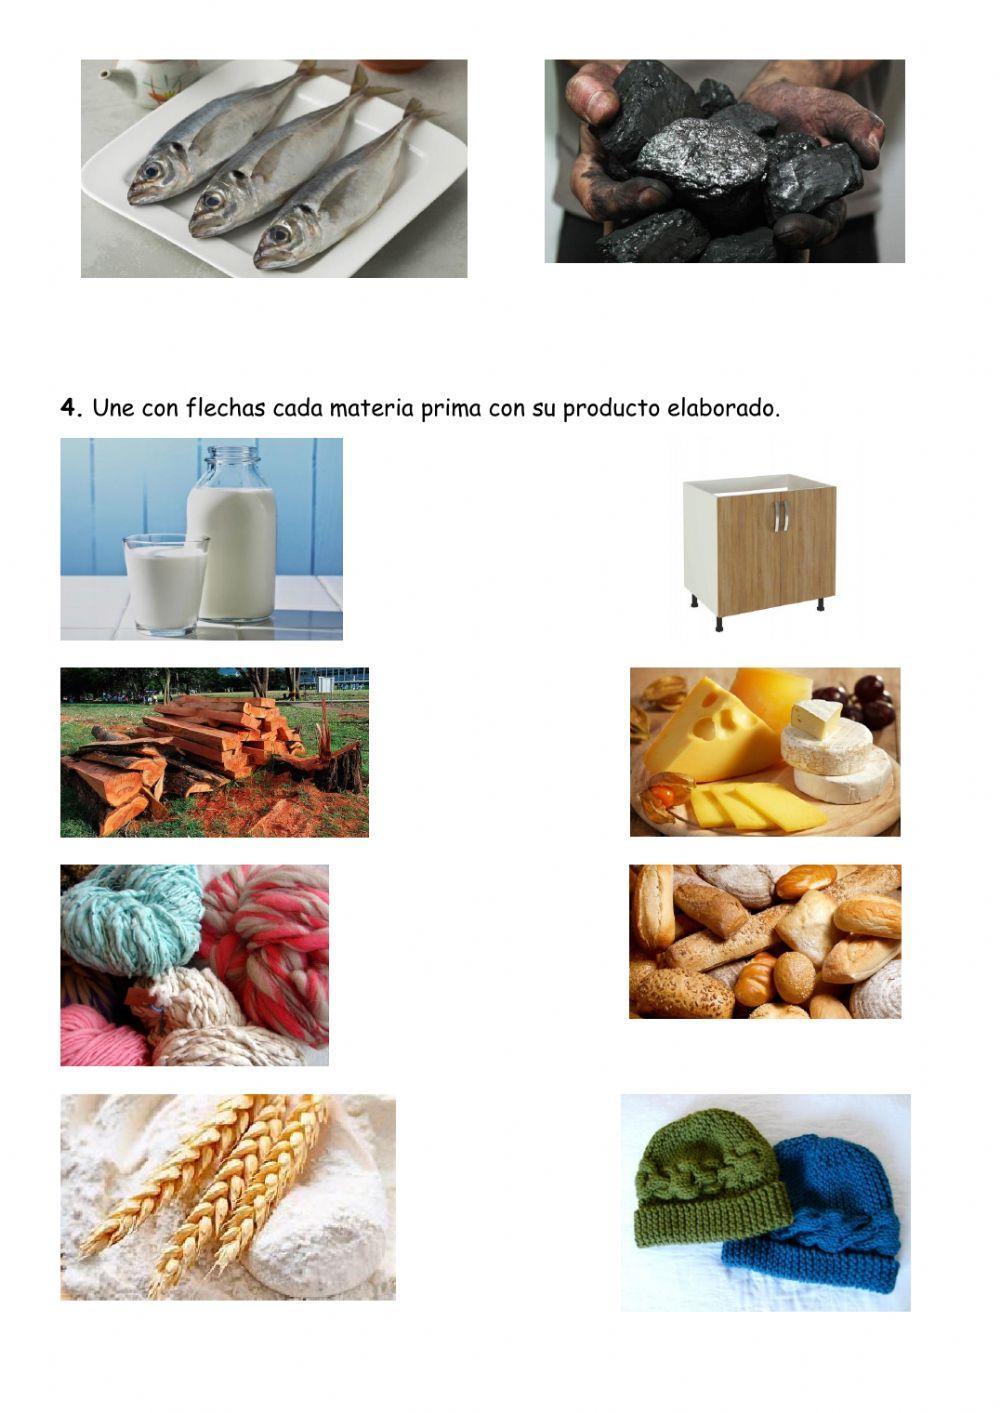 Materias primas y productos elaborados